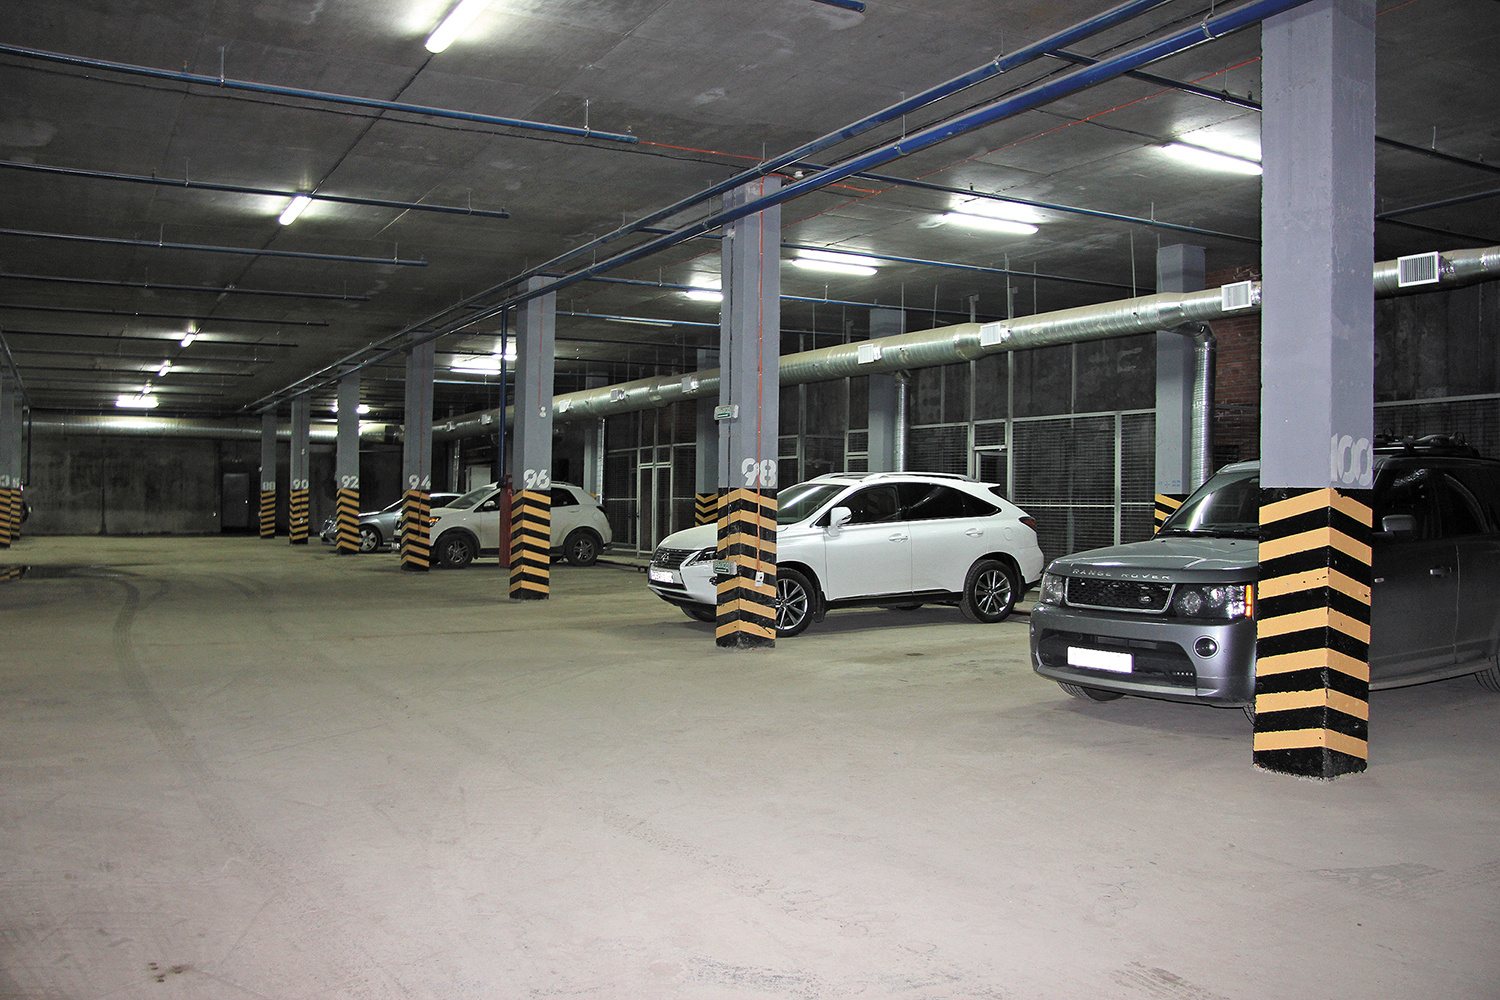 Для удобства автомобилистов в микрорайоне предусмотрен вместительный подземный паркинг.